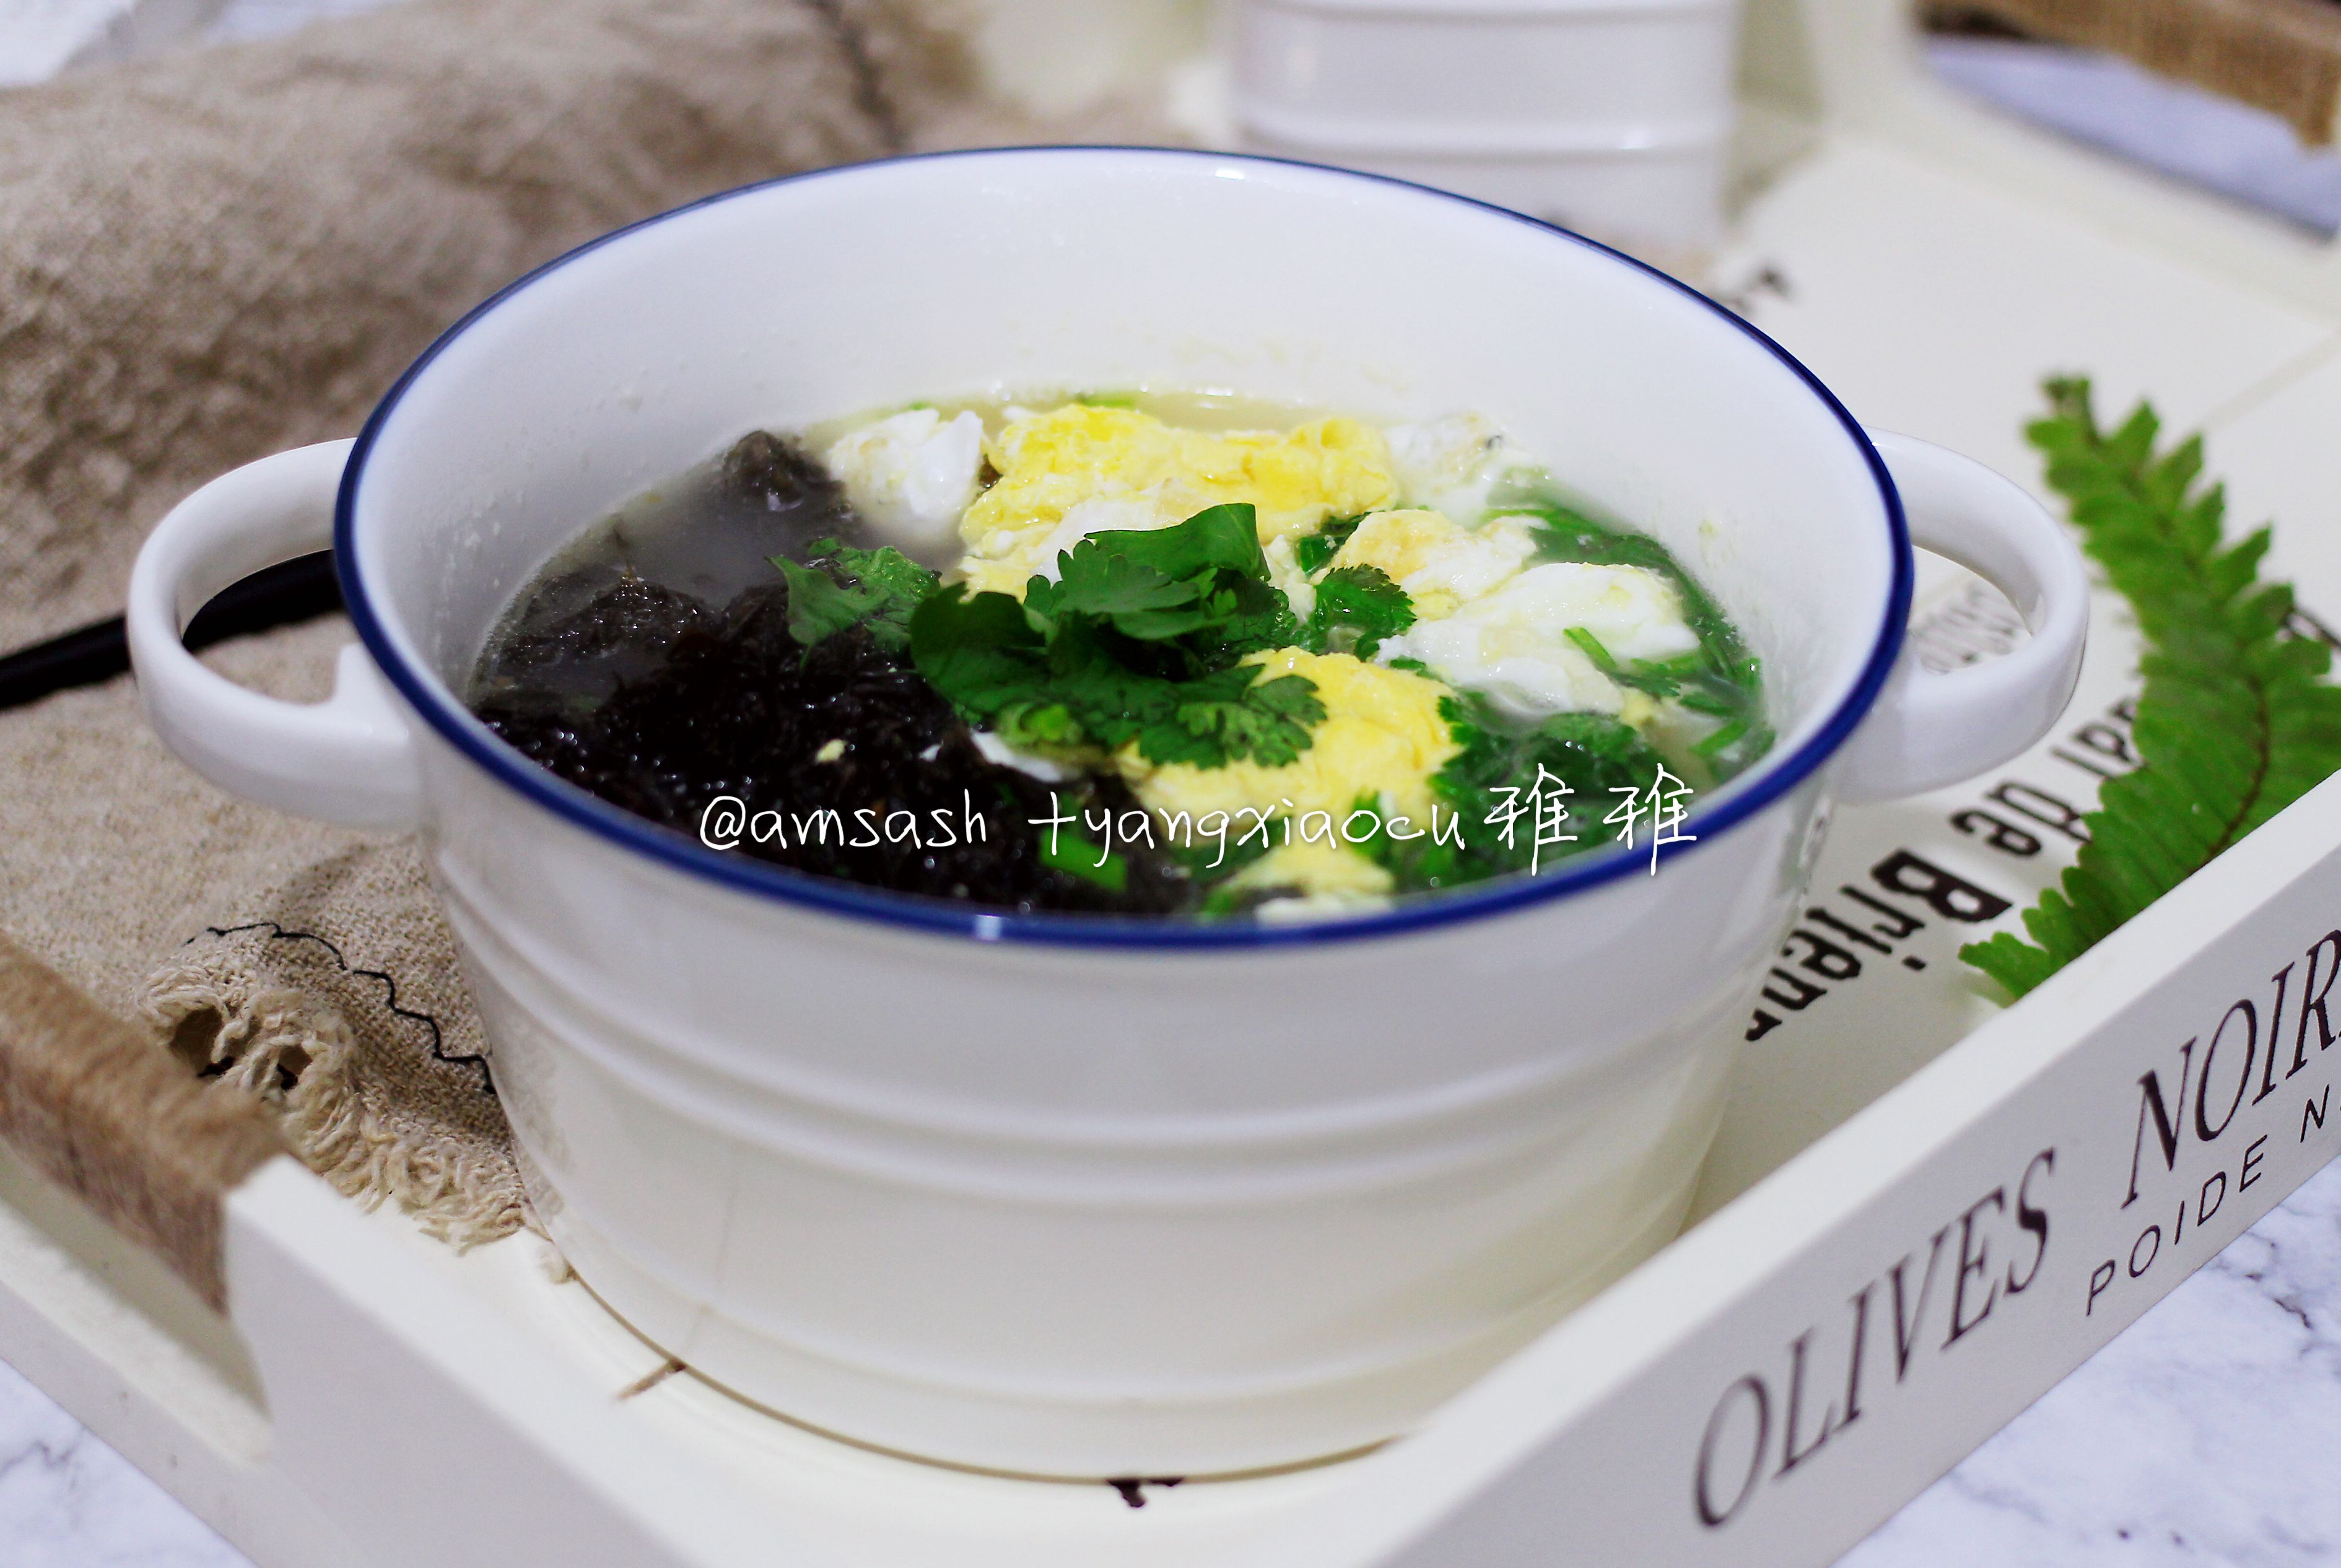 紫菜鸡蛋汤制作材料:紫菜1张 鸡蛋3个 香菜1颗 盐适量制作步骤:1